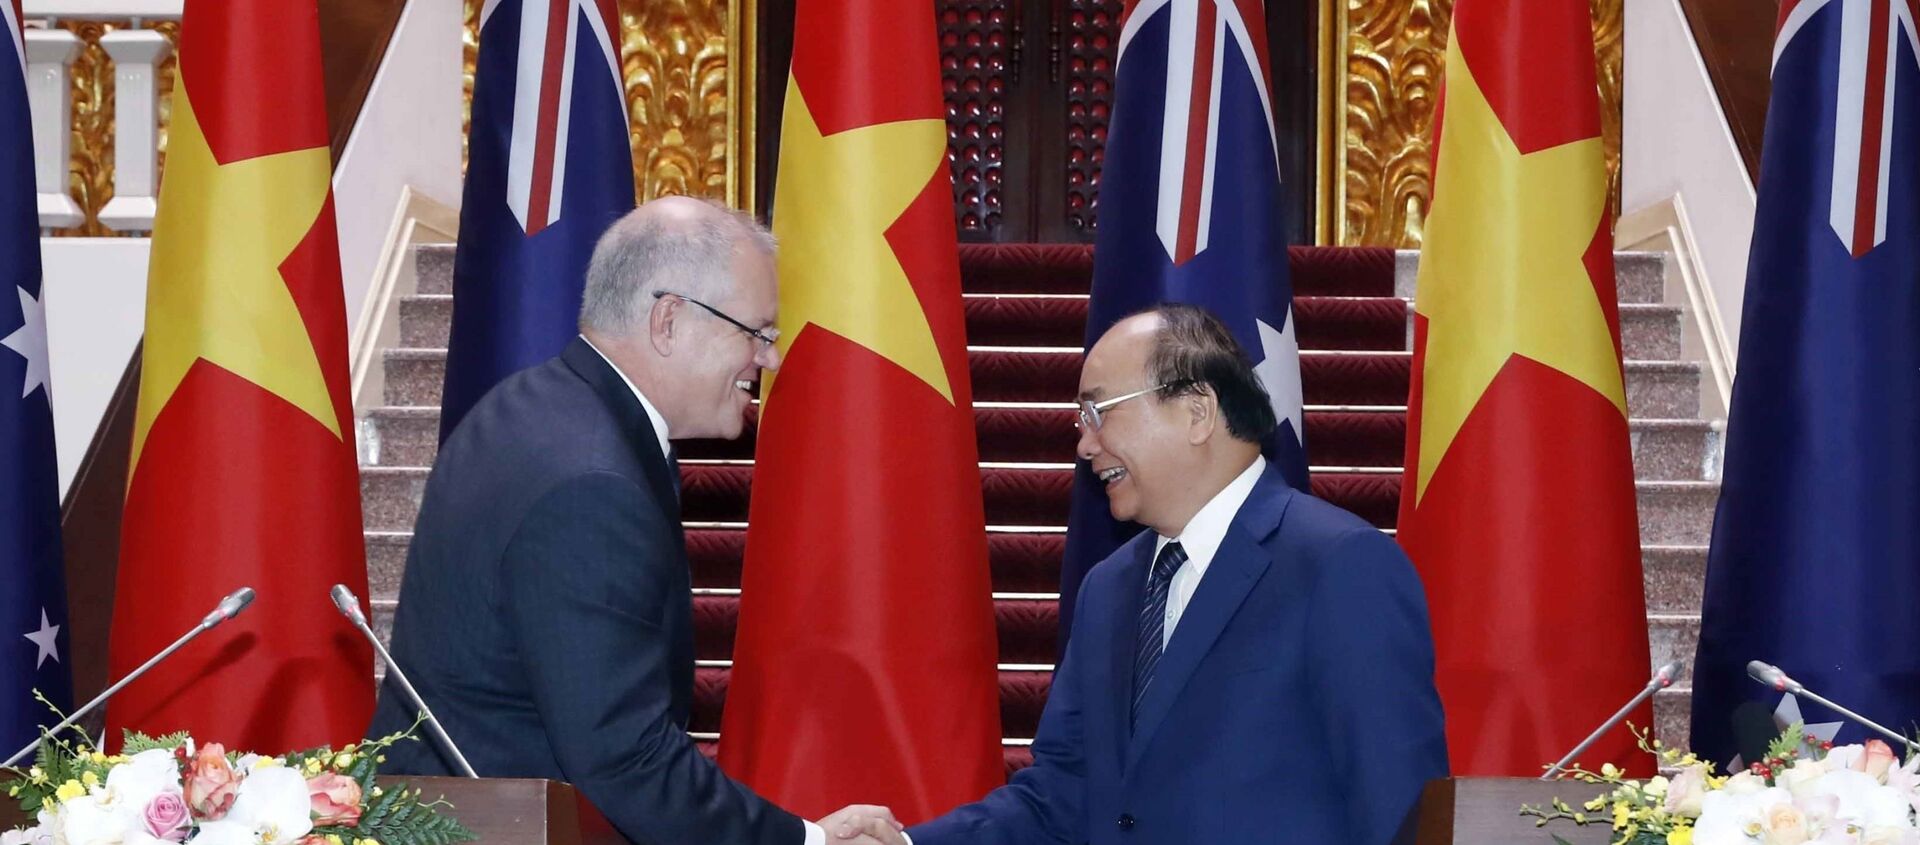 Thủ tướng Nguyễn Xuân Phúc và Thủ tướng Australia Scott Morrison họp báo quốc tế - Sputnik Việt Nam, 1920, 23.08.2019